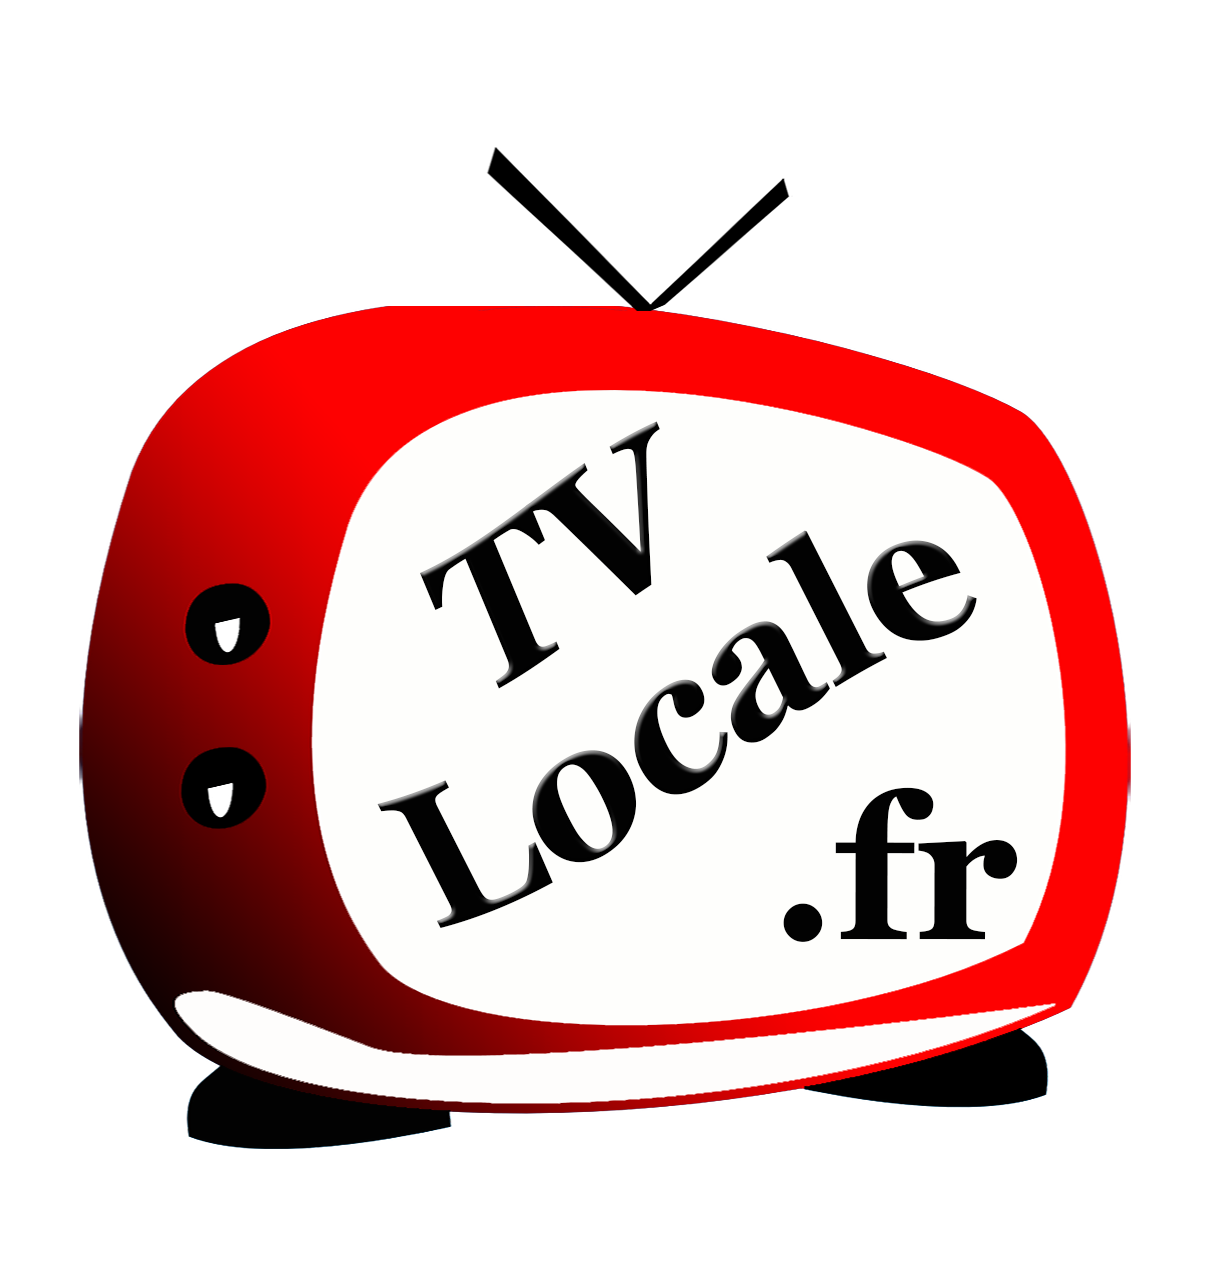 Résultat de recherche d'images pour "Logo TV Locale.fr"